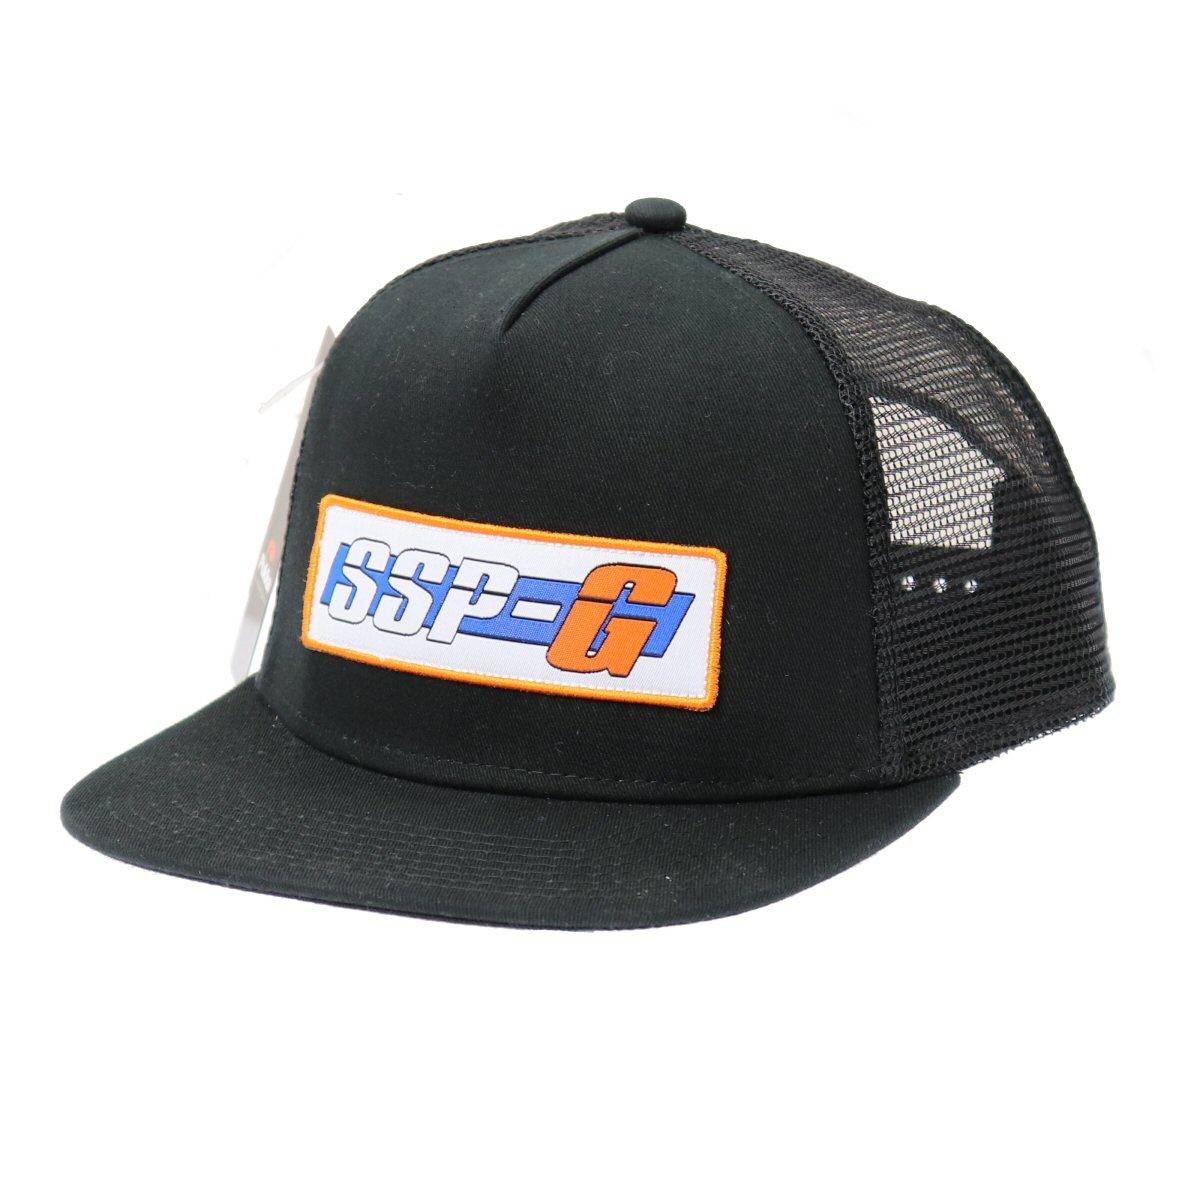 SSP-G Flat Bill Trucker Hat